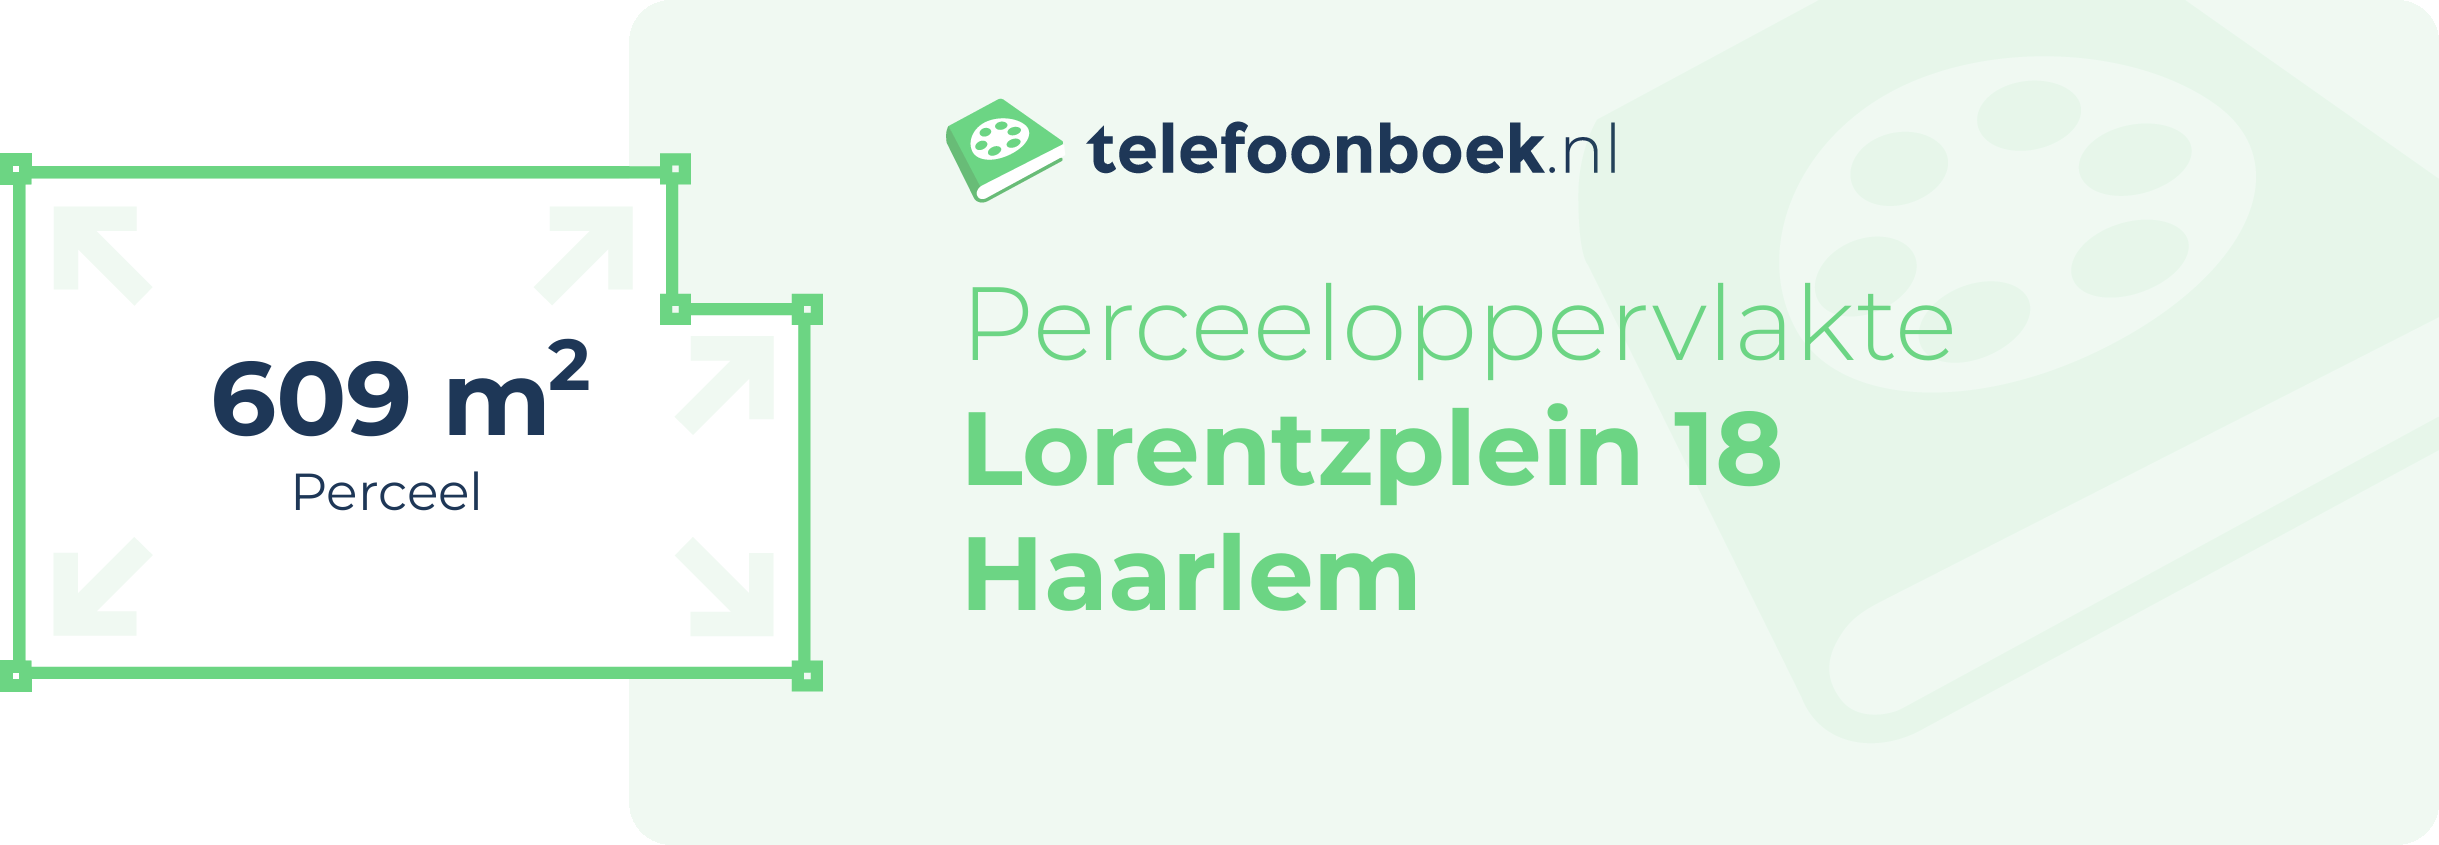 Perceeloppervlakte Lorentzplein 18 Haarlem